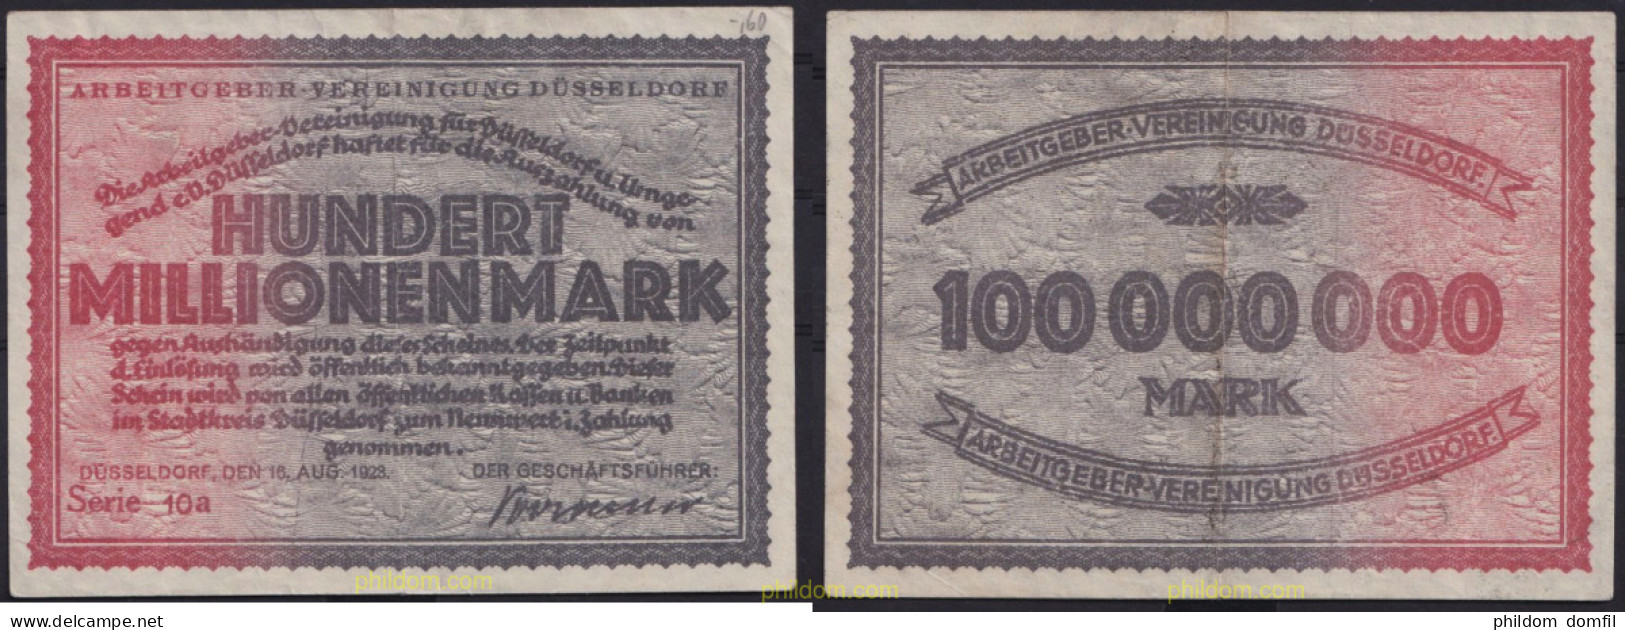 3691 ALEMANIA 1923 GERMANY HUNDERT MILLIONEN MARK DUSSELDORF 1923 - Reichsschuldenverwaltung